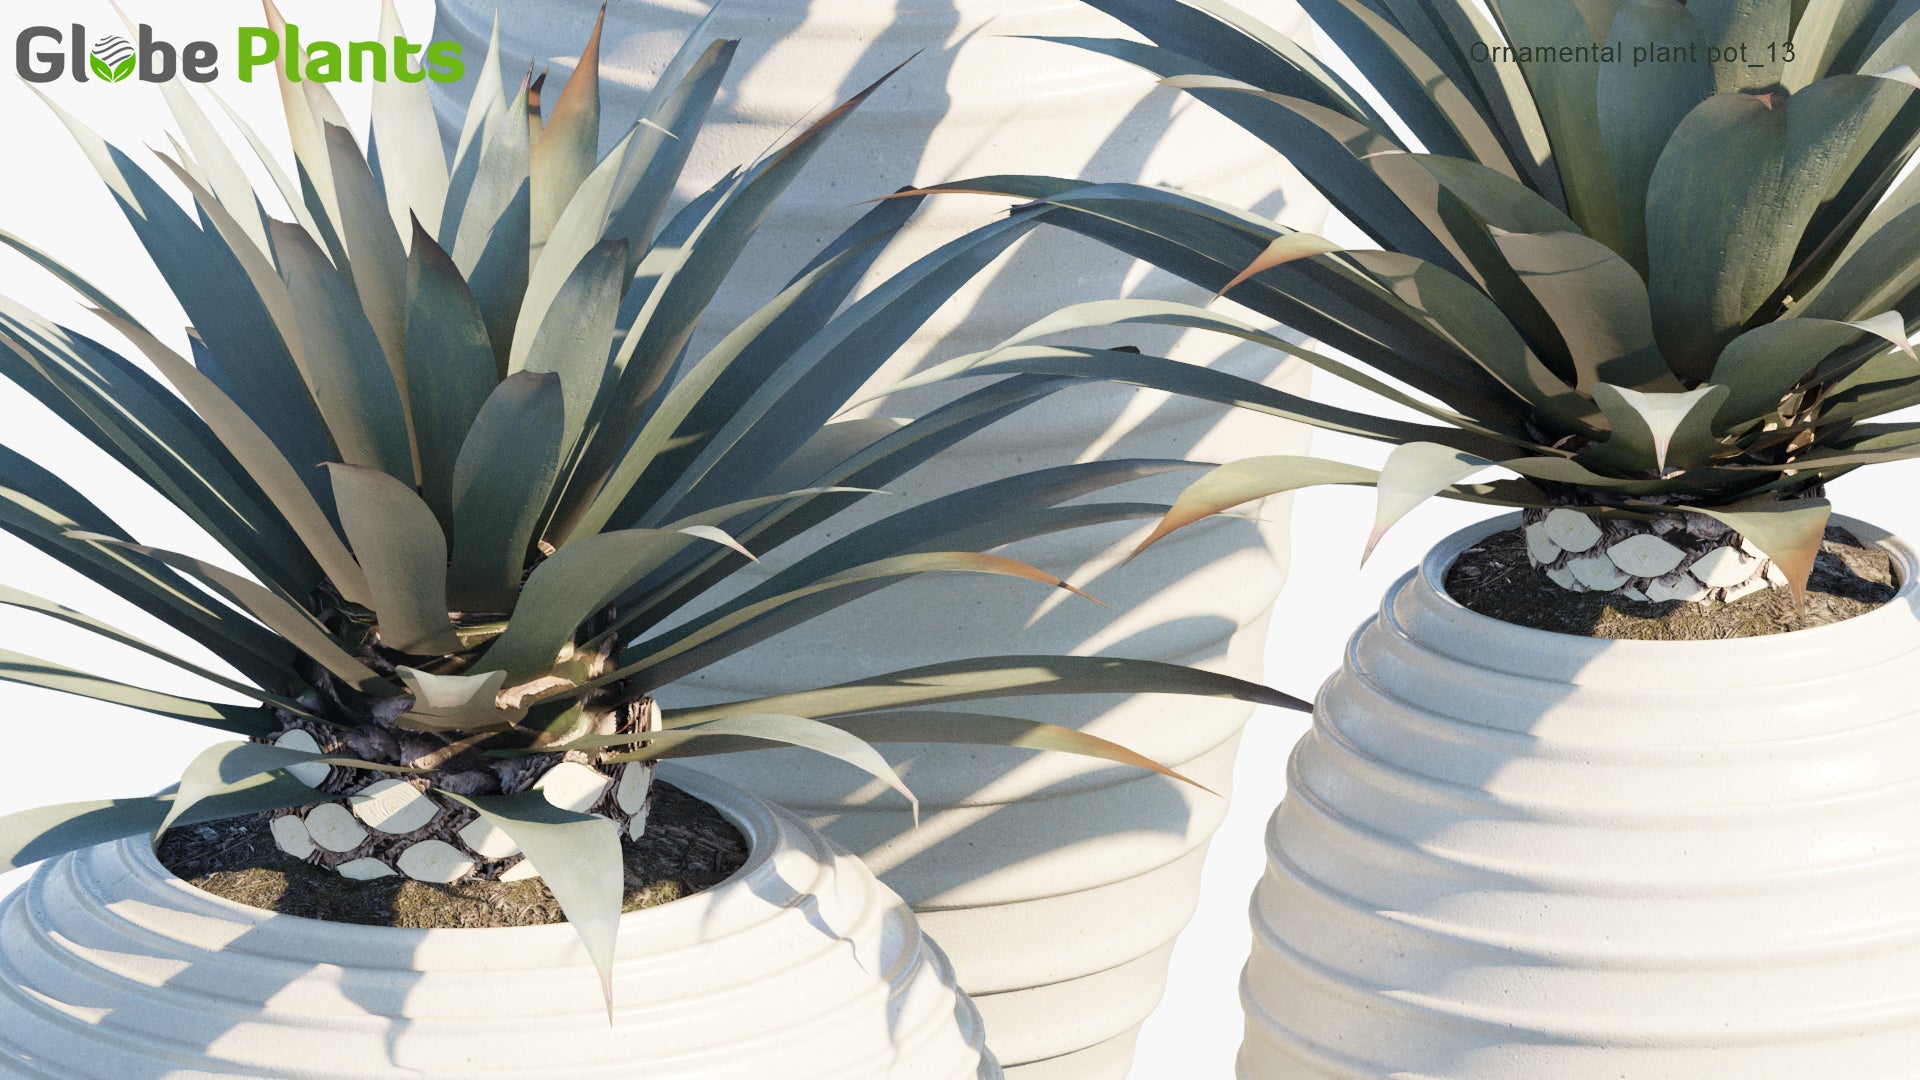 Ornamental Pot Plant 13 - Agave Tequilana (3D Model)